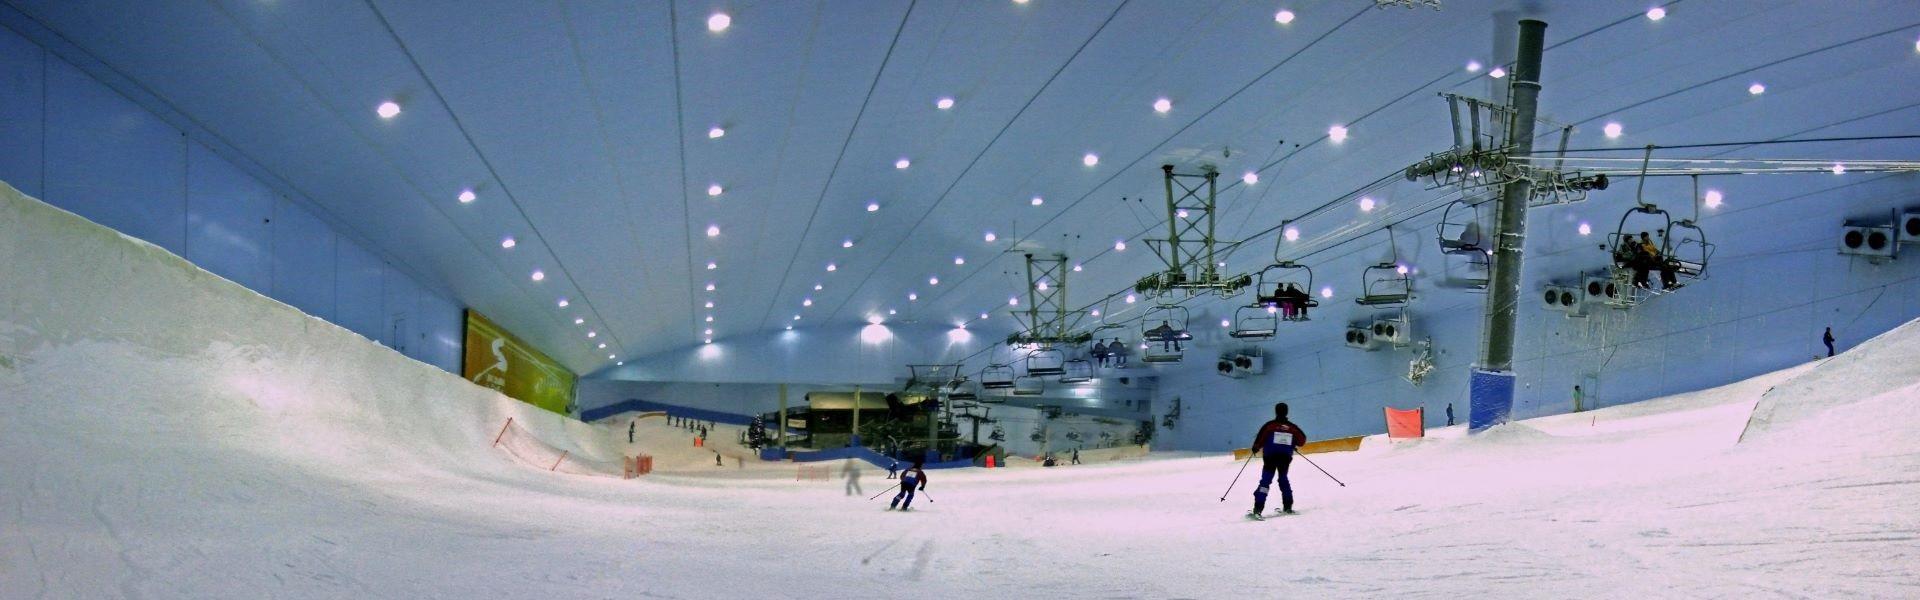 پیست اسکی یخی دبی Ski Resort Dubai